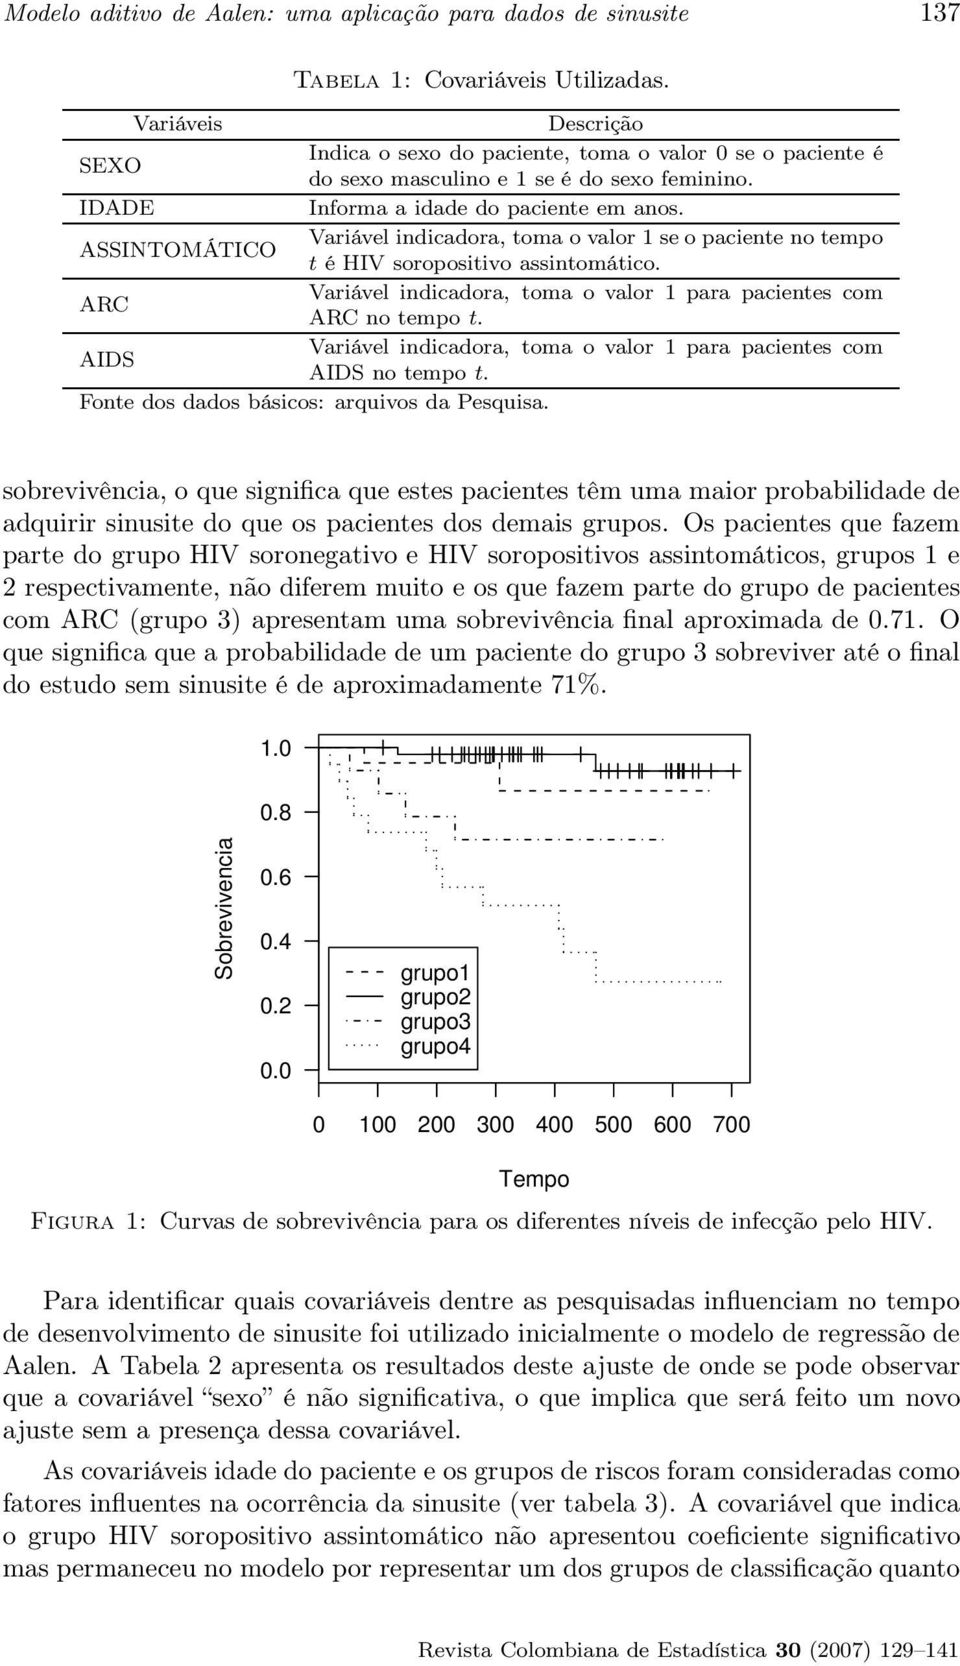 ASSINTOMÁTICO Variável indicadora, toma o valor 1 se o paciente no tempo t é HIV soropositivo assintomático. ARC Variável indicadora, toma o valor 1 para pacientes com ARC no tempo t.